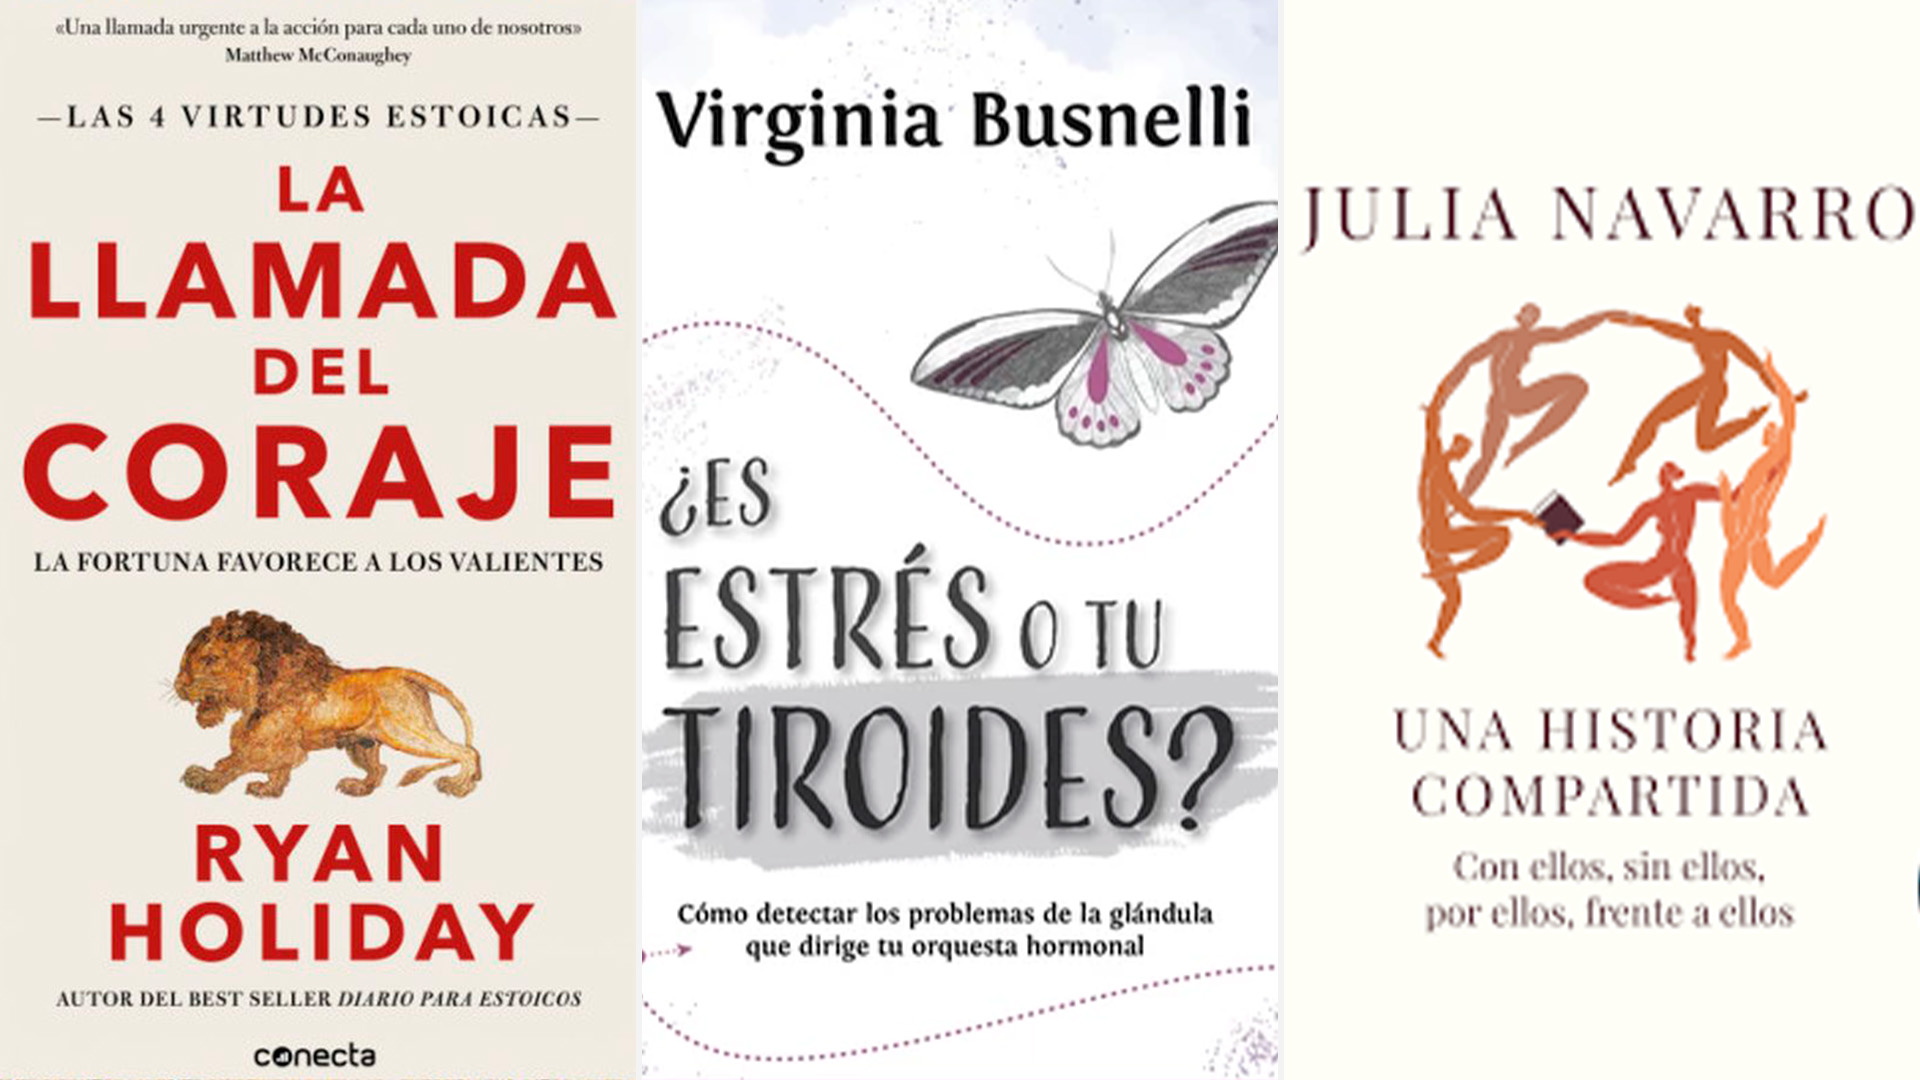 Qué leer el fin de semana: el best-seller “La llamada del coraje”, “¿Es estrés o tu tiroides?” y Julia Navarro por menos de 1.650 pesos argentinos